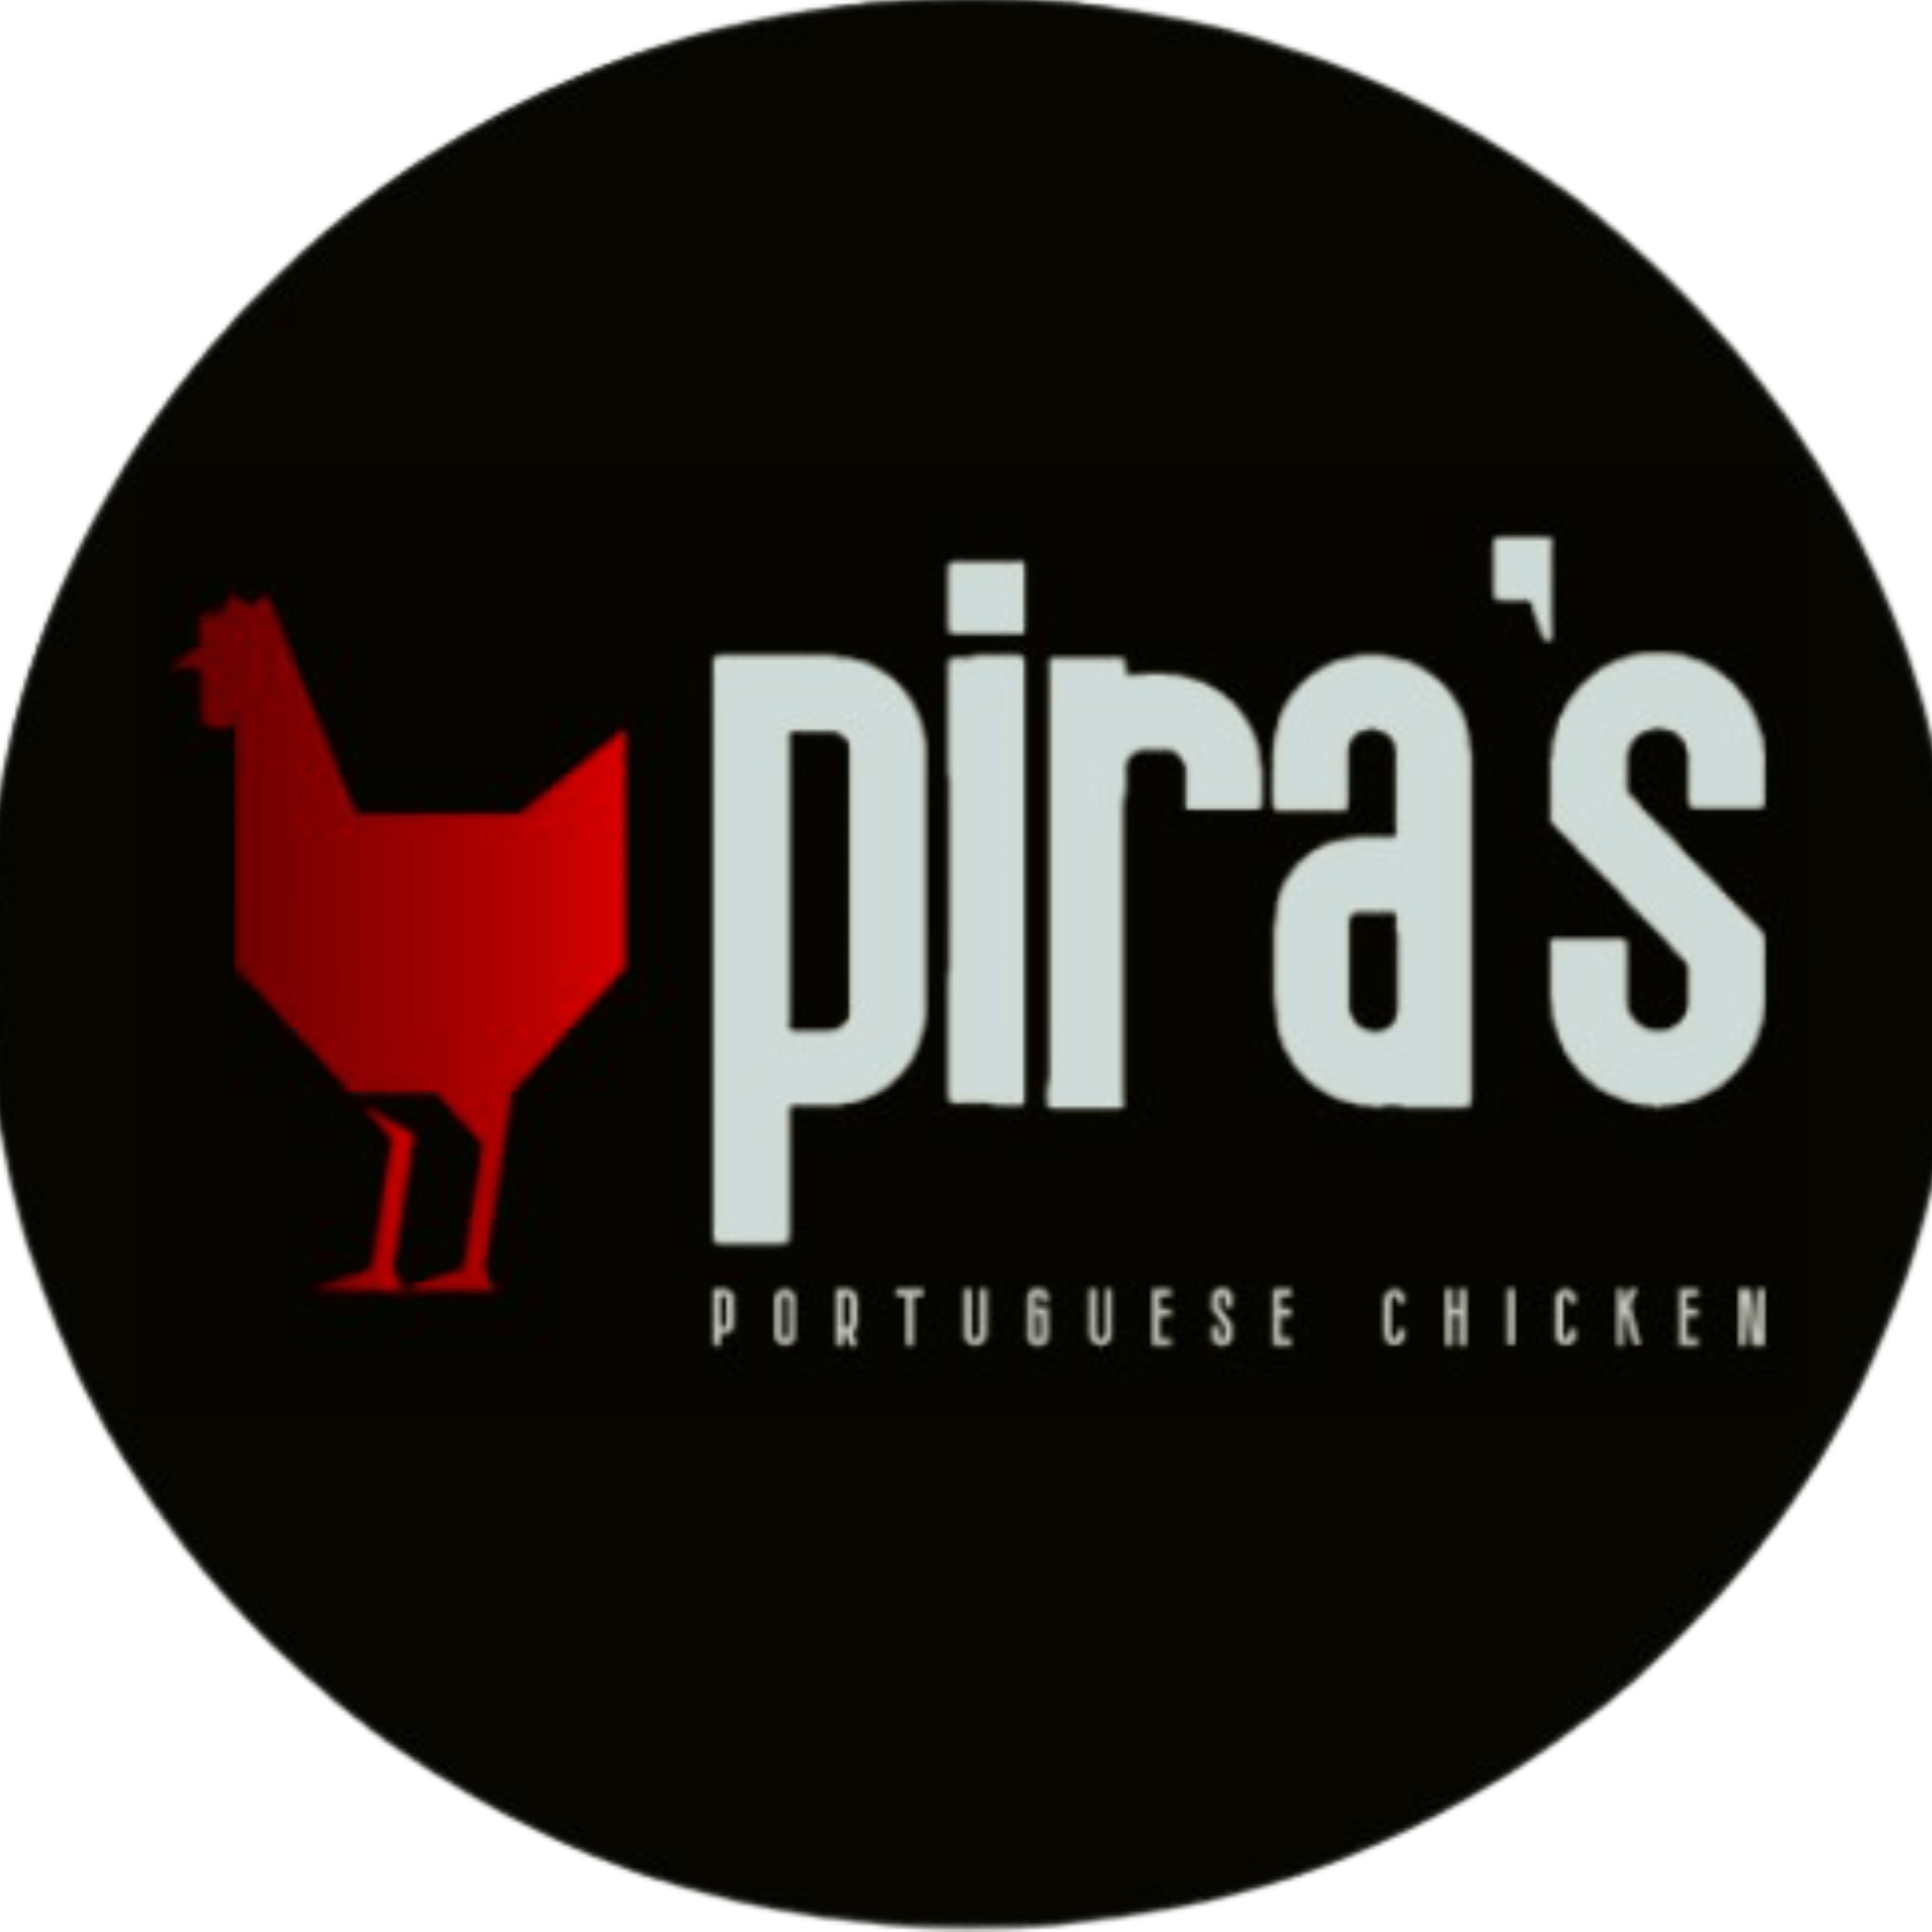 Piras Portugese Chicken logo.